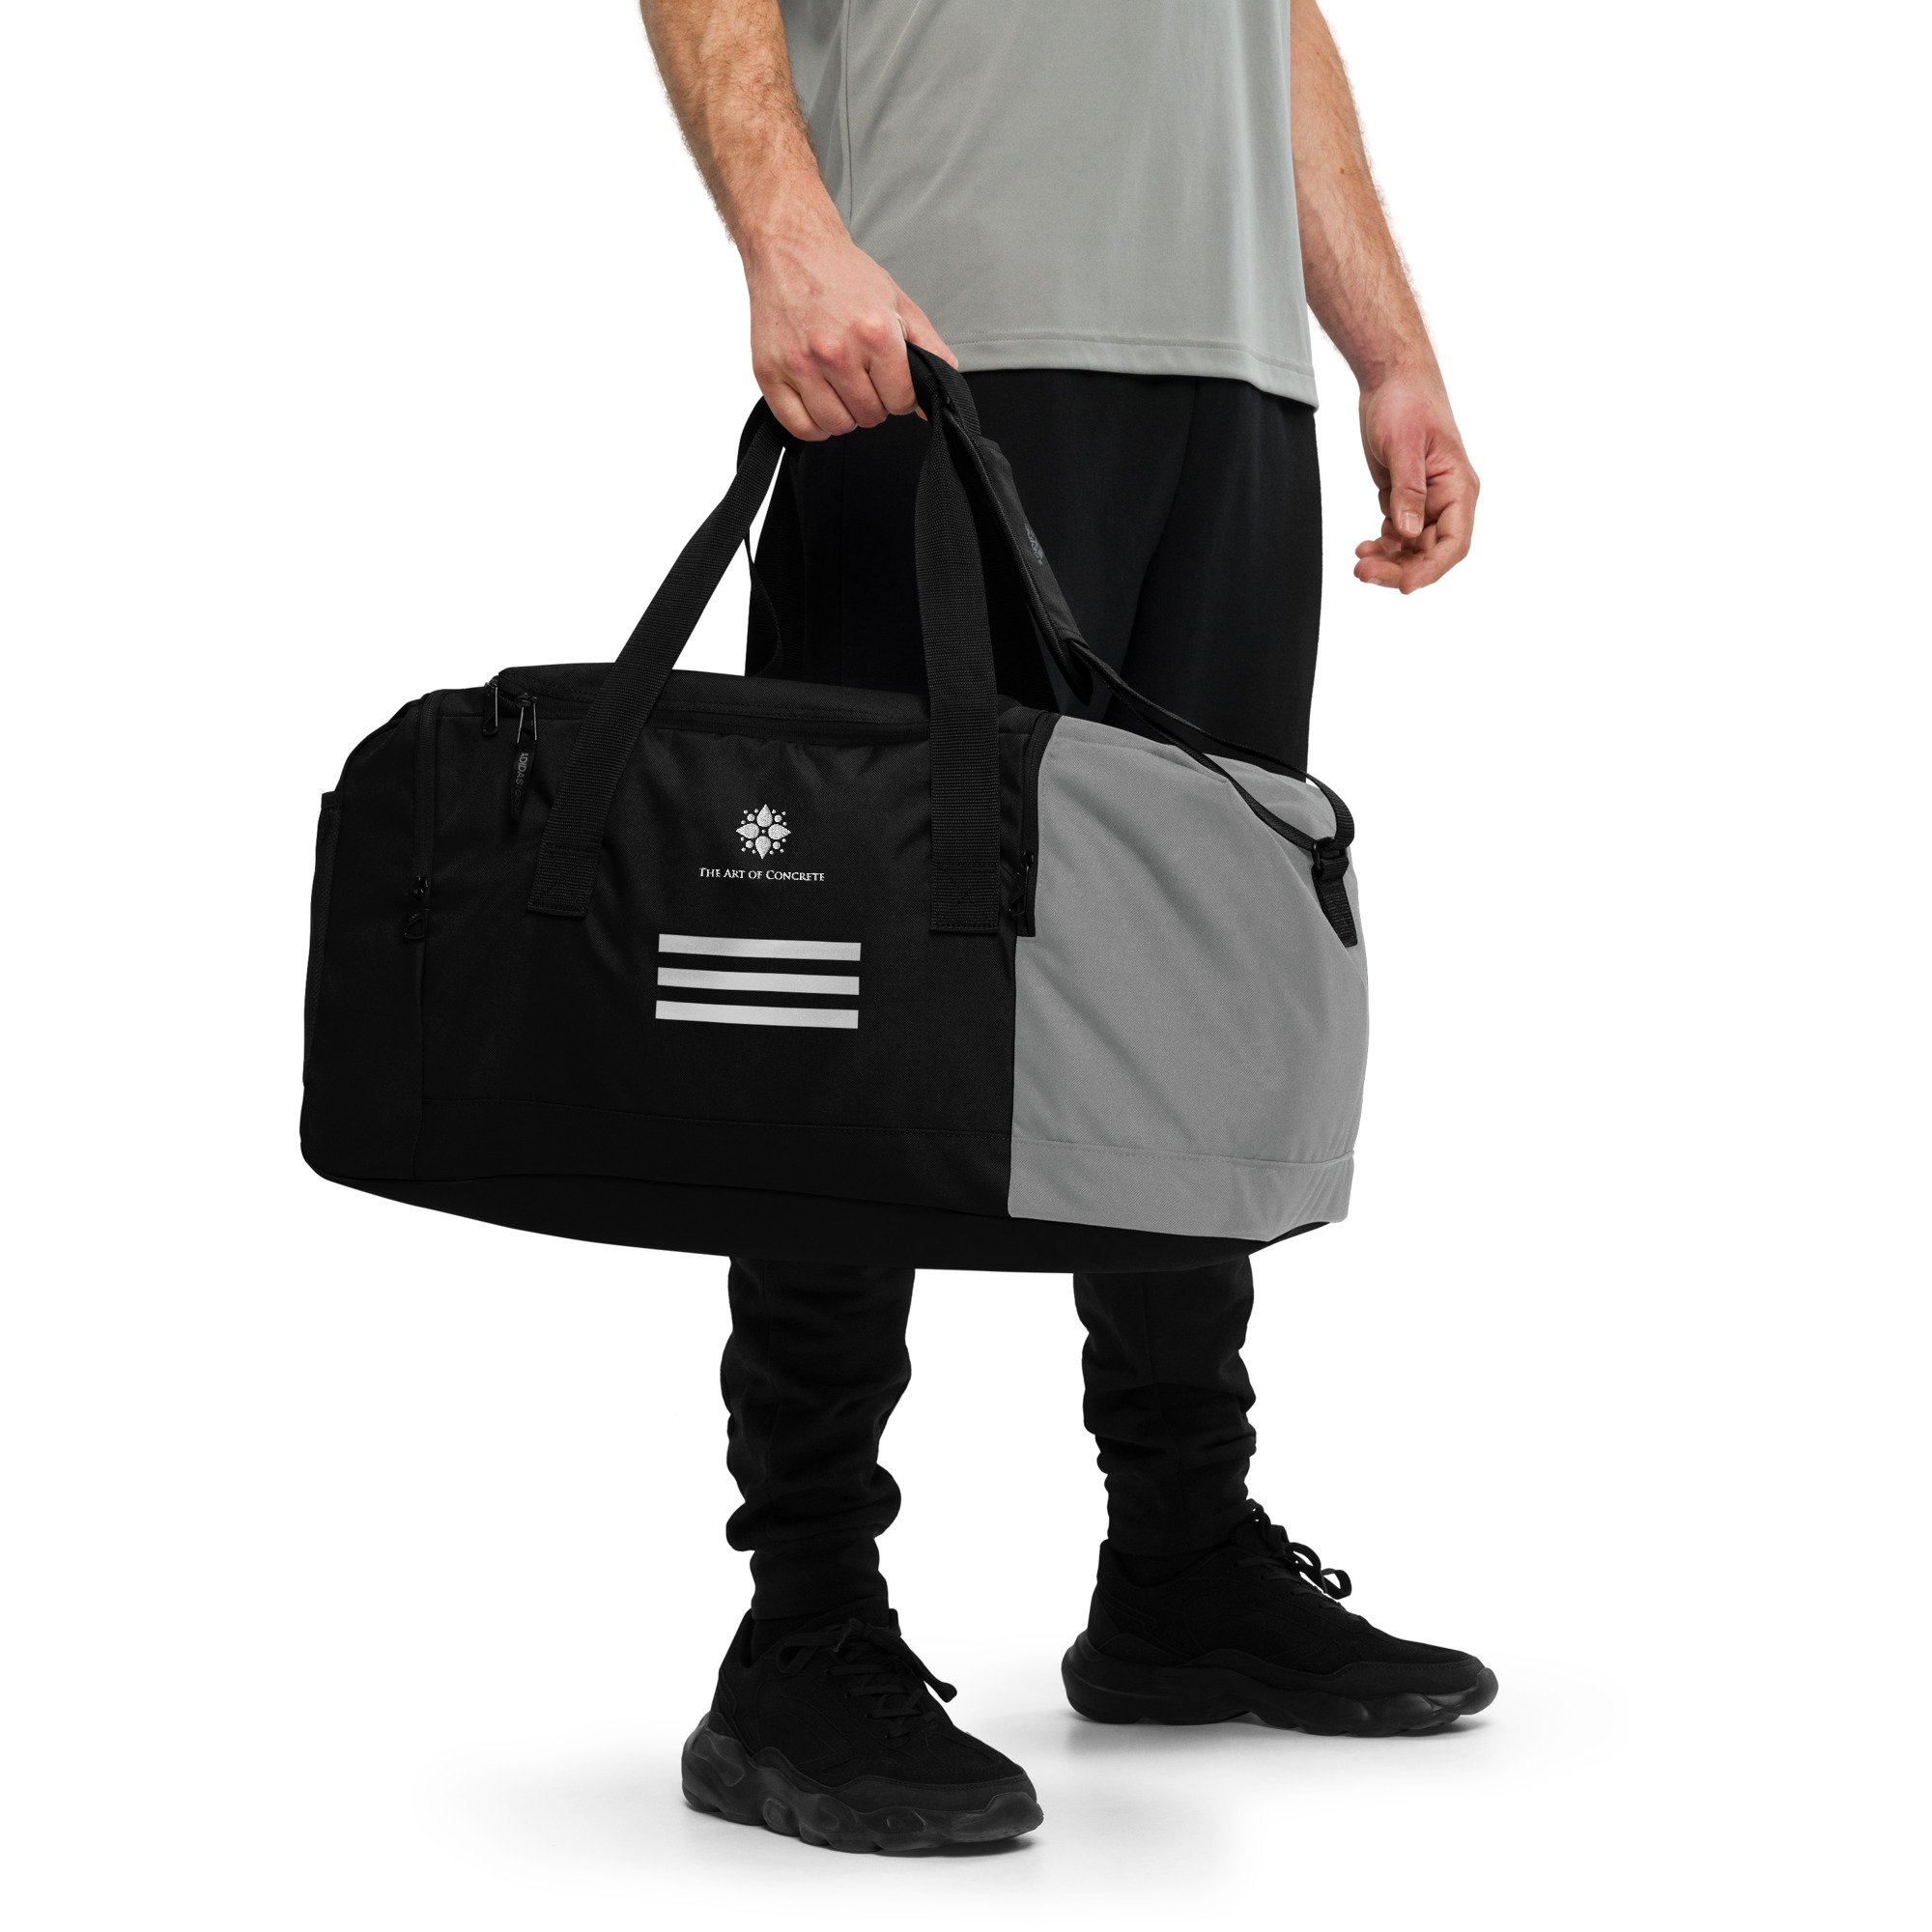 Adidas Hydro shield Green Black Duffel Bag Sports Bag Gym Bag | eBay